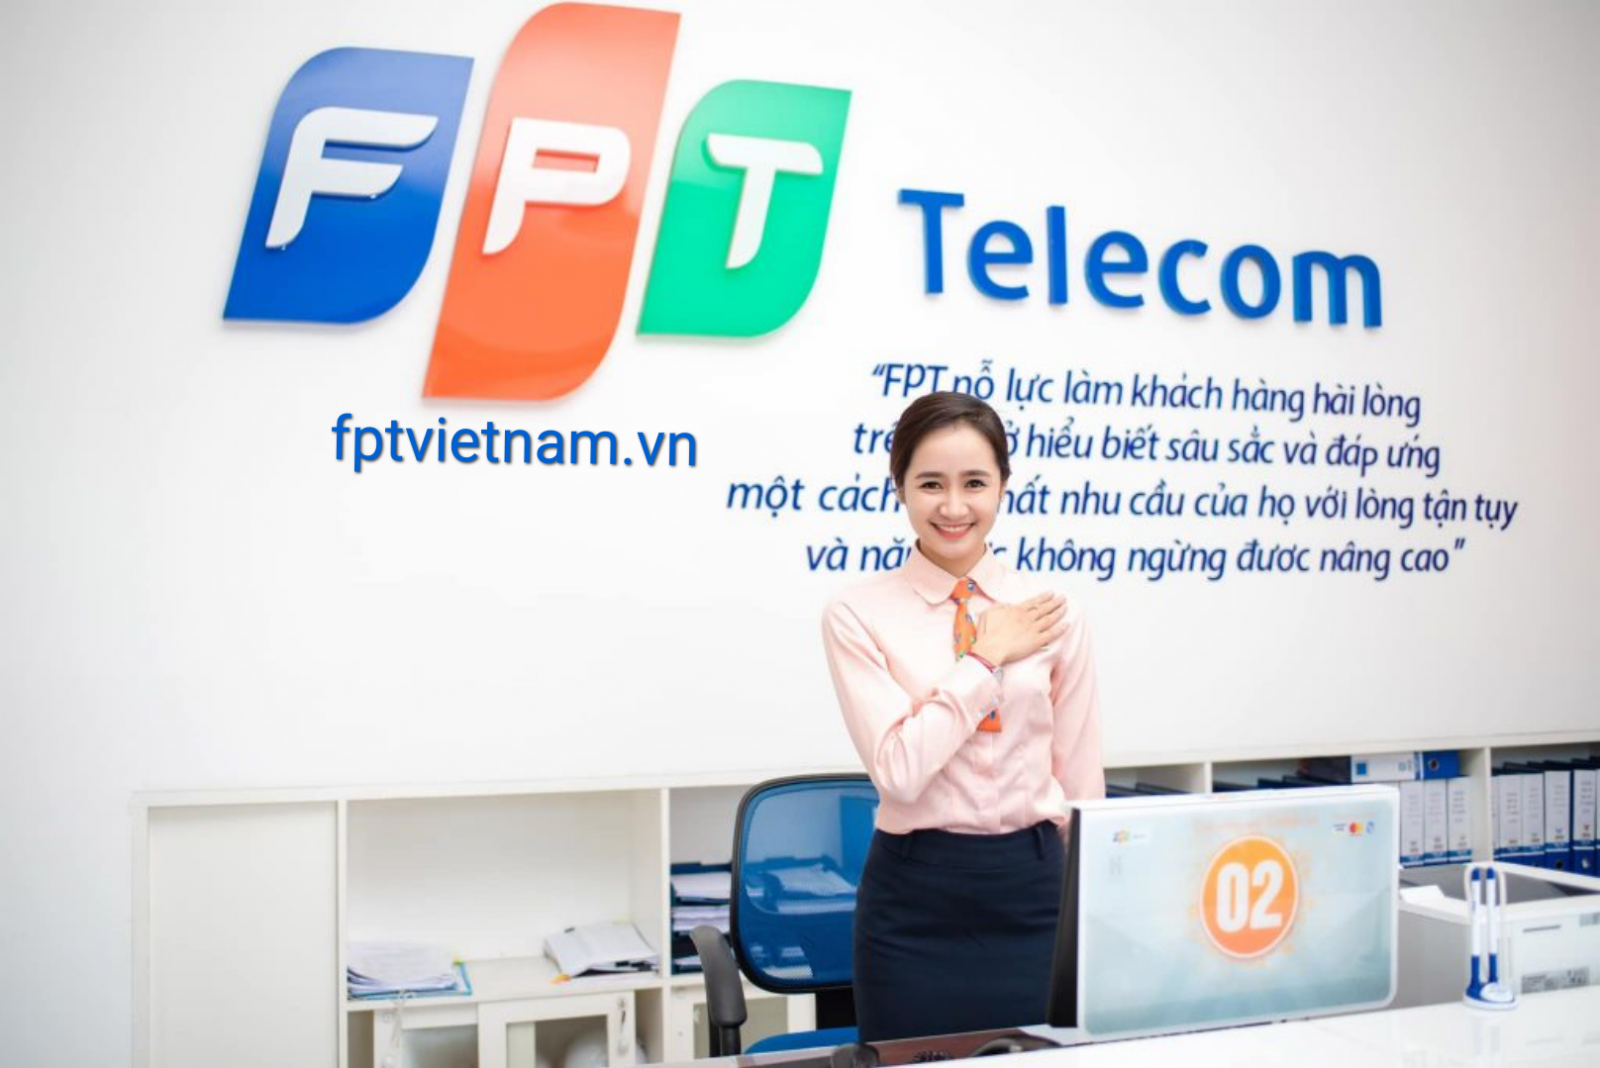 dịch vụ fpt telecom Lai Châu